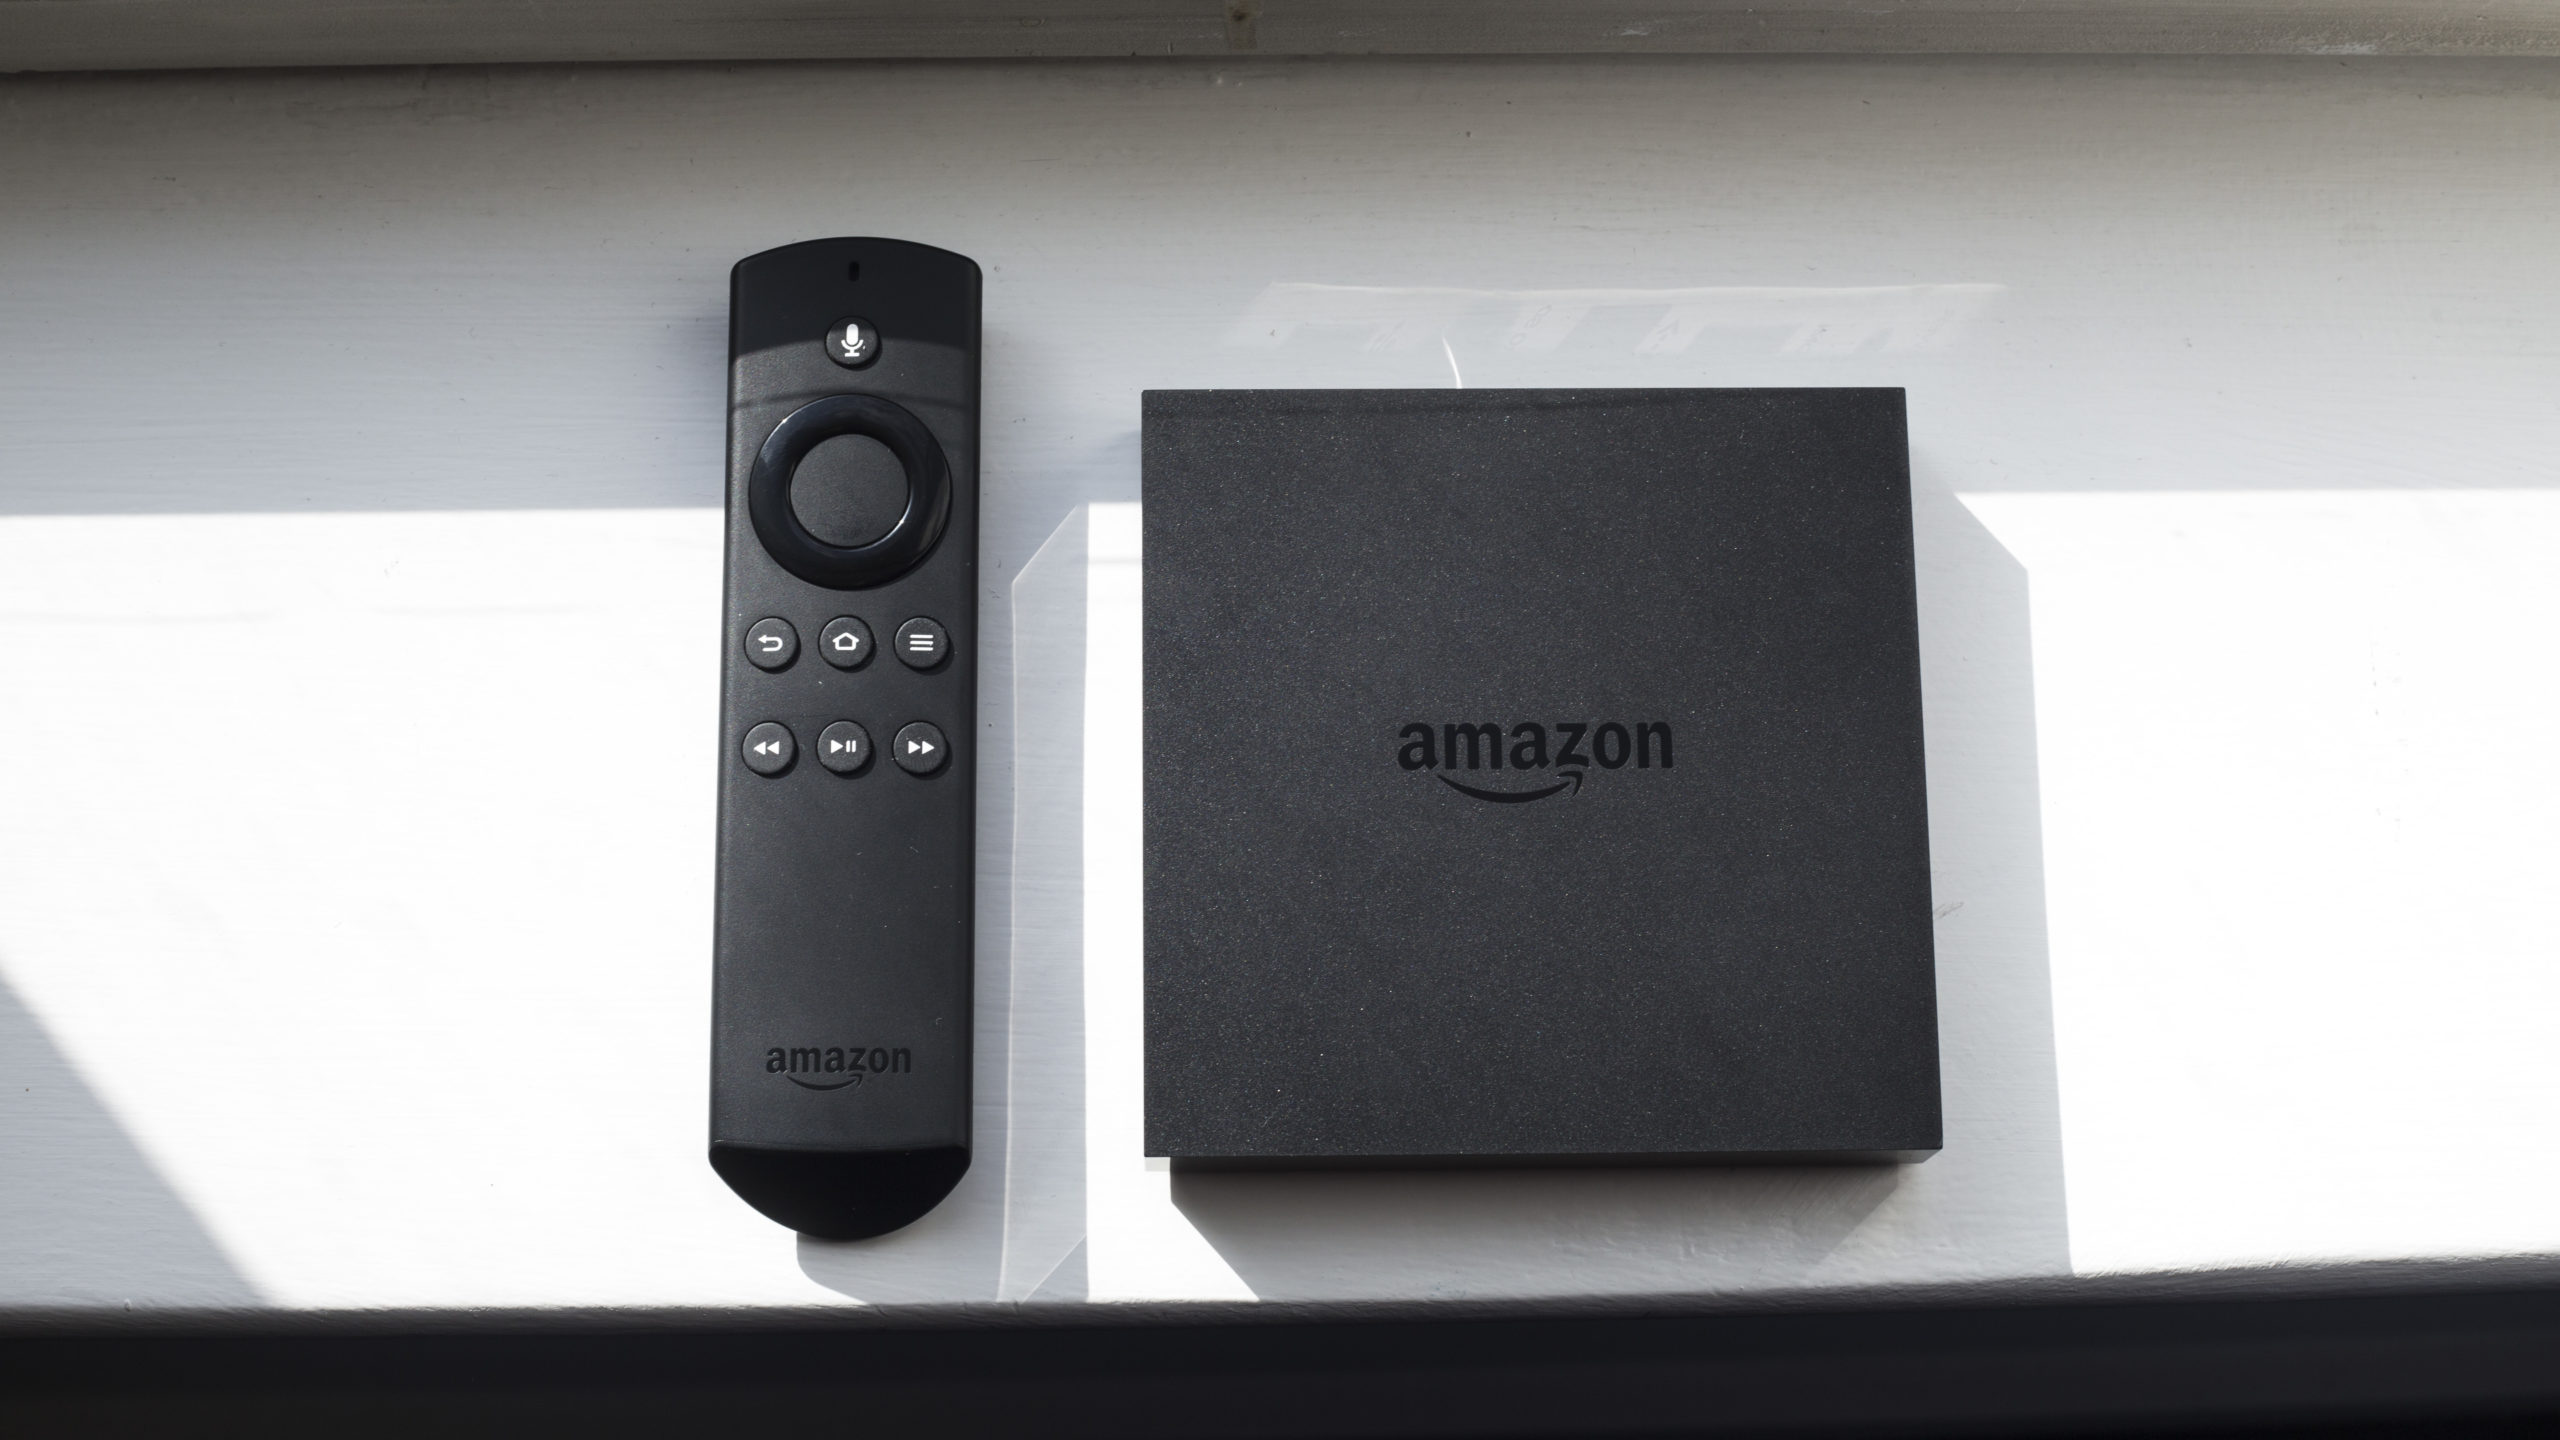 Amazon Fire TV İpuçları ve Püf Noktaları: Amazon'un TV Streamer'ı Hakkında Dokuz Gizli Özellik